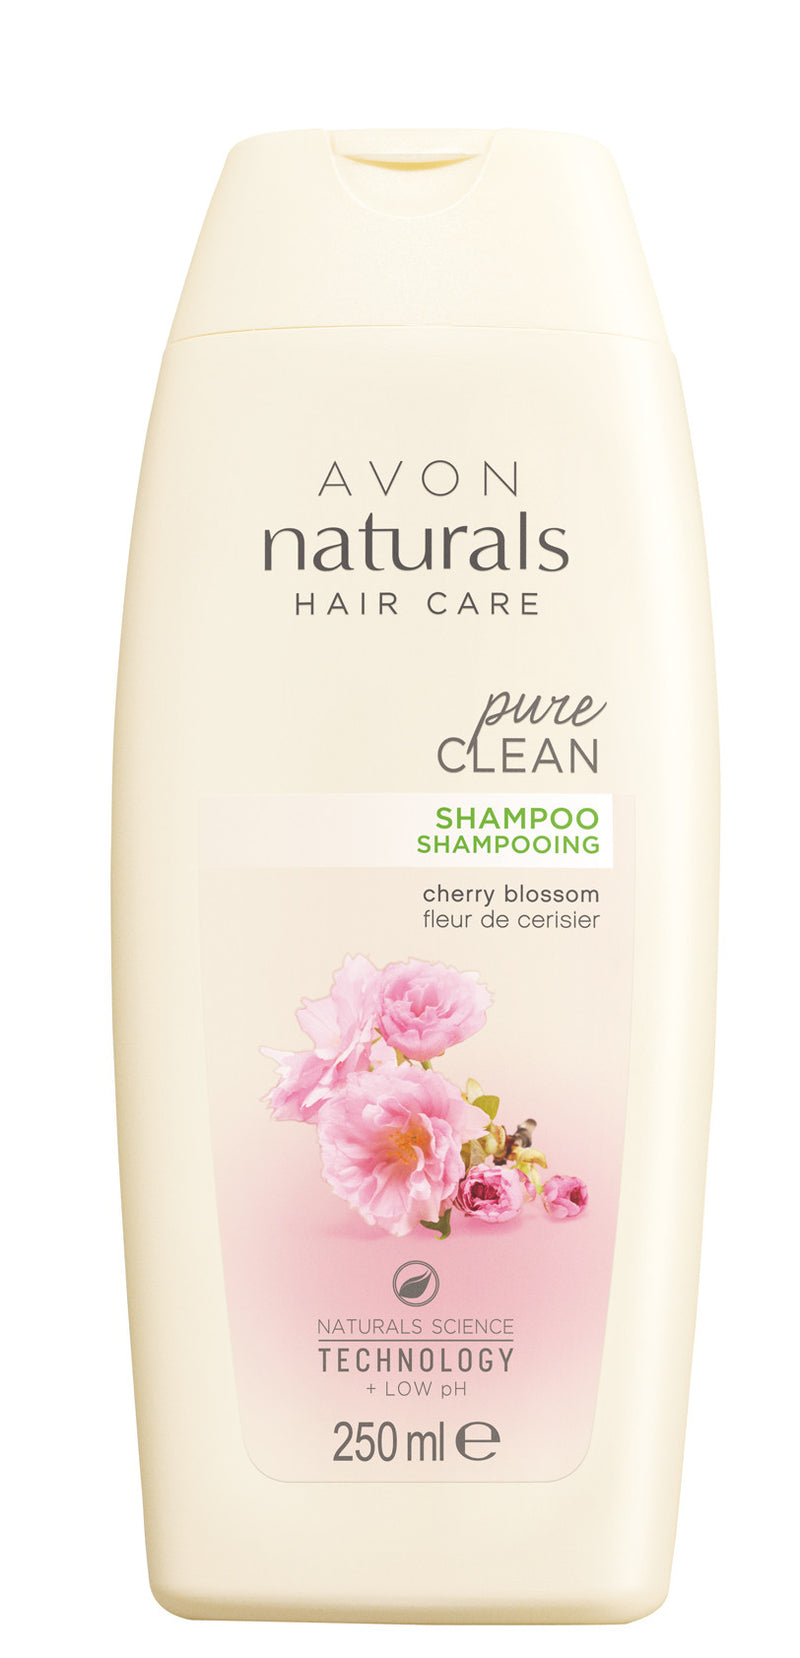 Naturals Cherry Blossom Shampoo 250ml